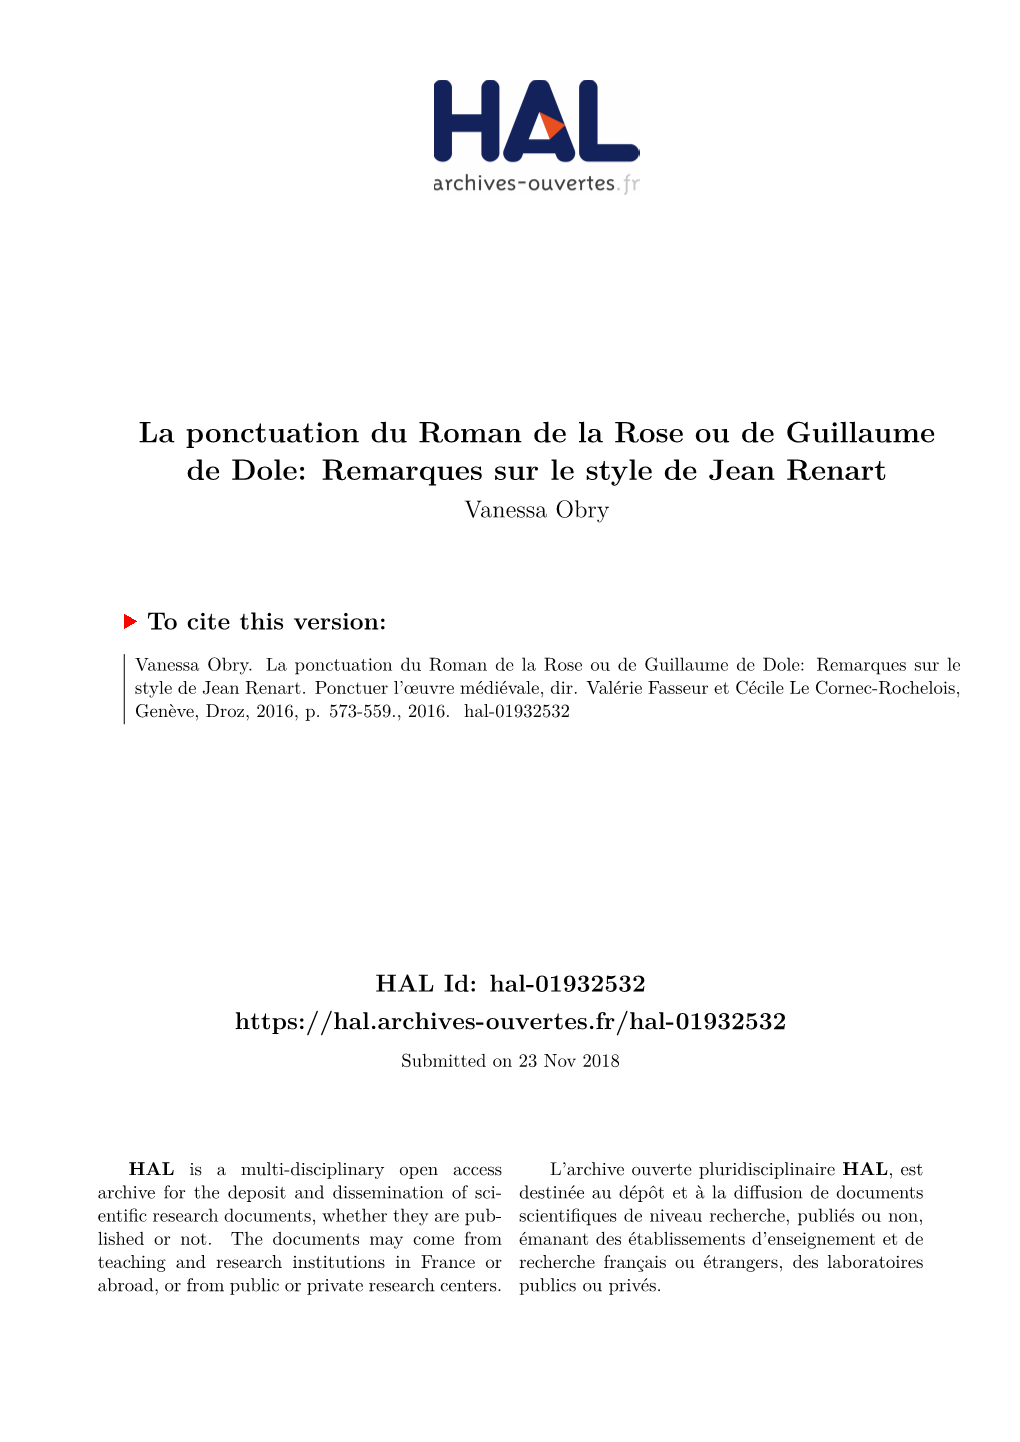 La Ponctuation Du Roman De La Rose Ou De Guillaume De Dole: Remarques Sur Le Style De Jean Renart Vanessa Obry